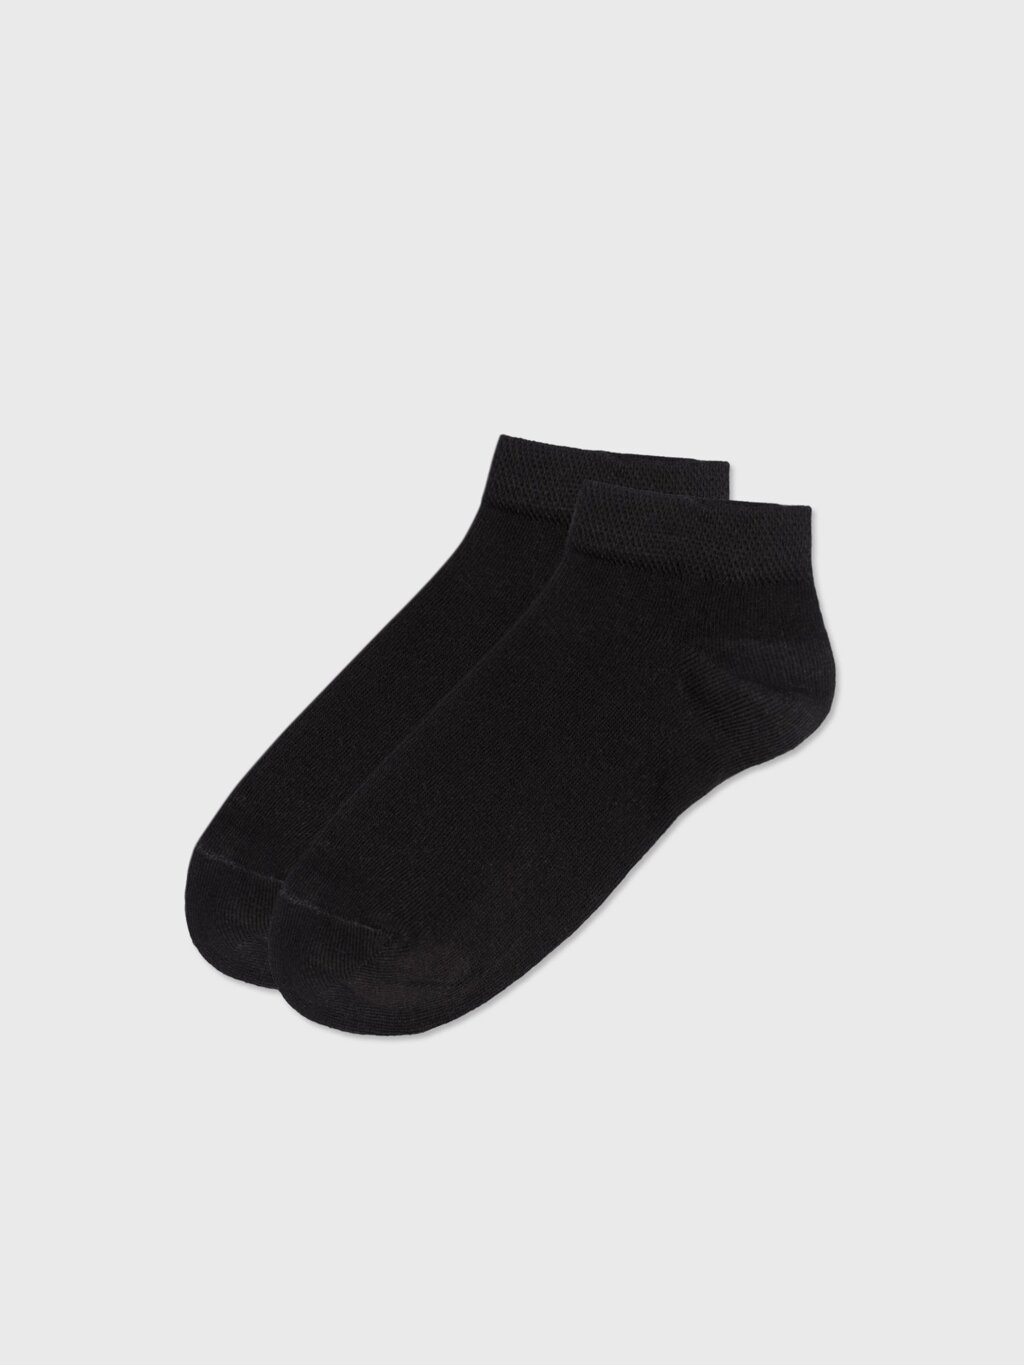 Носки укороченные черные (38-40) от компании Admi - фото 1